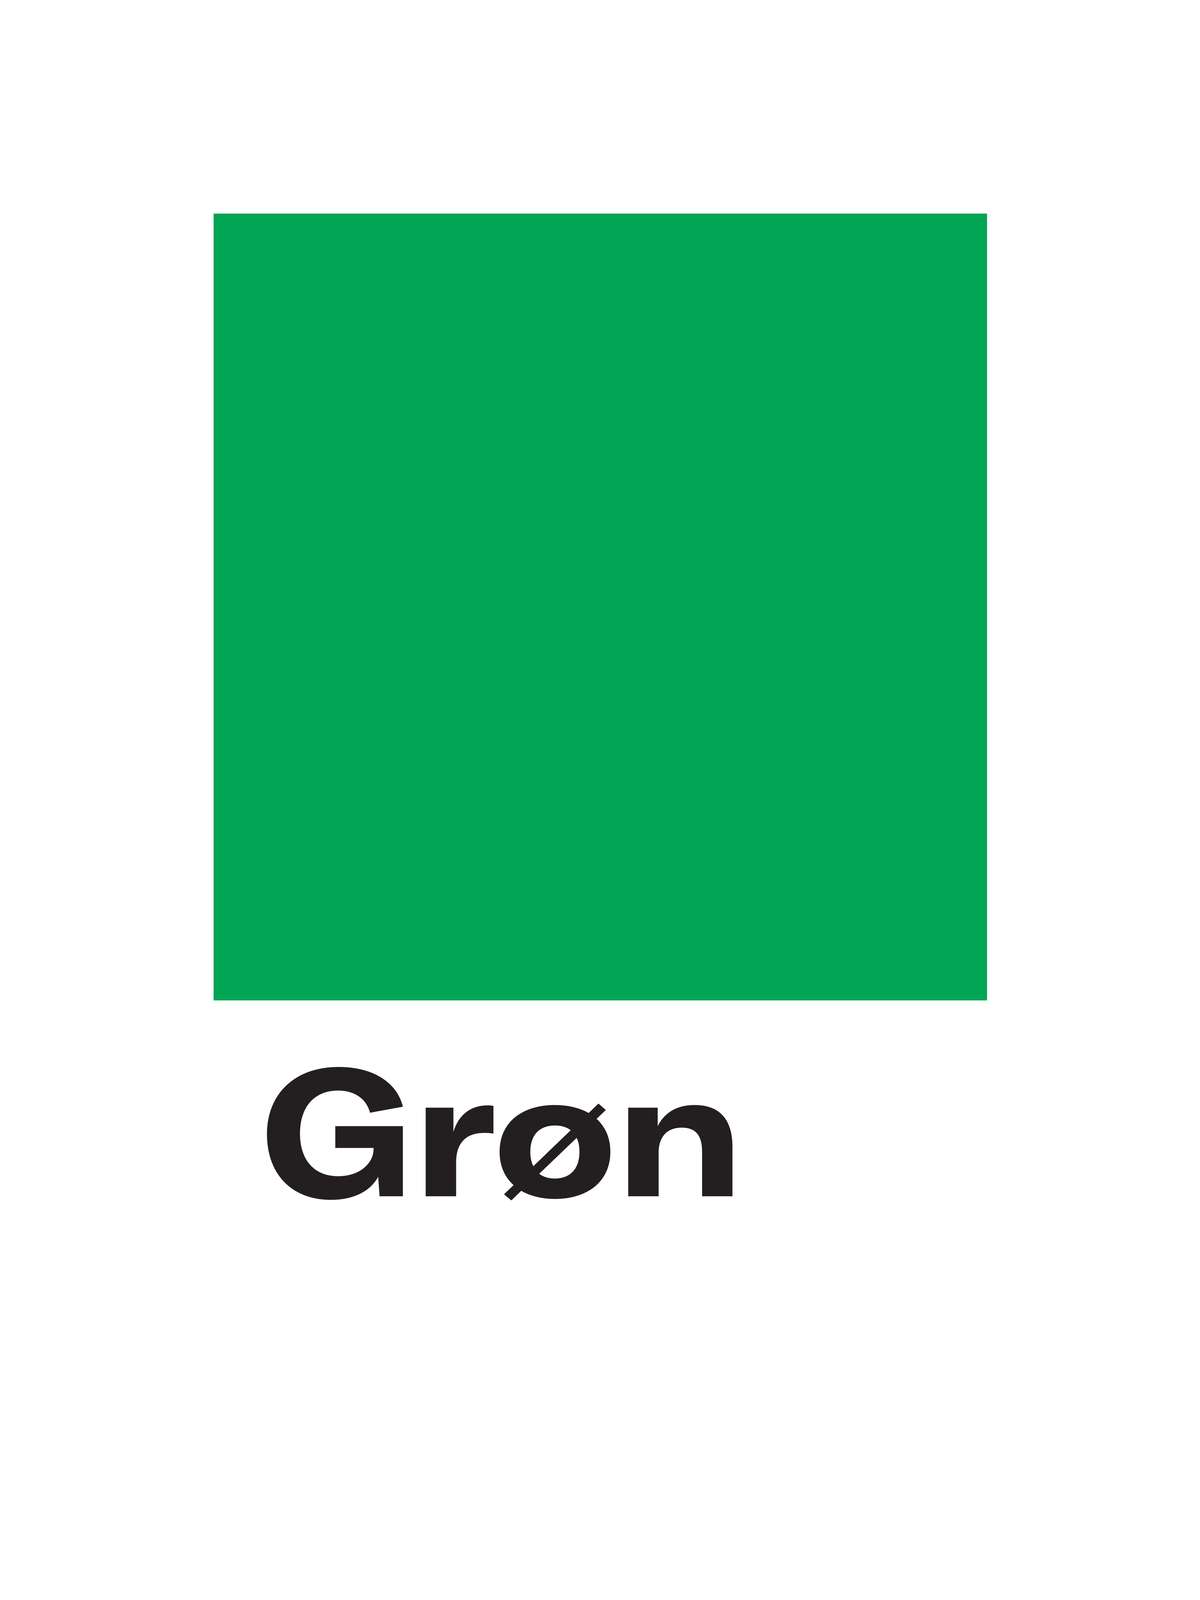 gron negativ pms